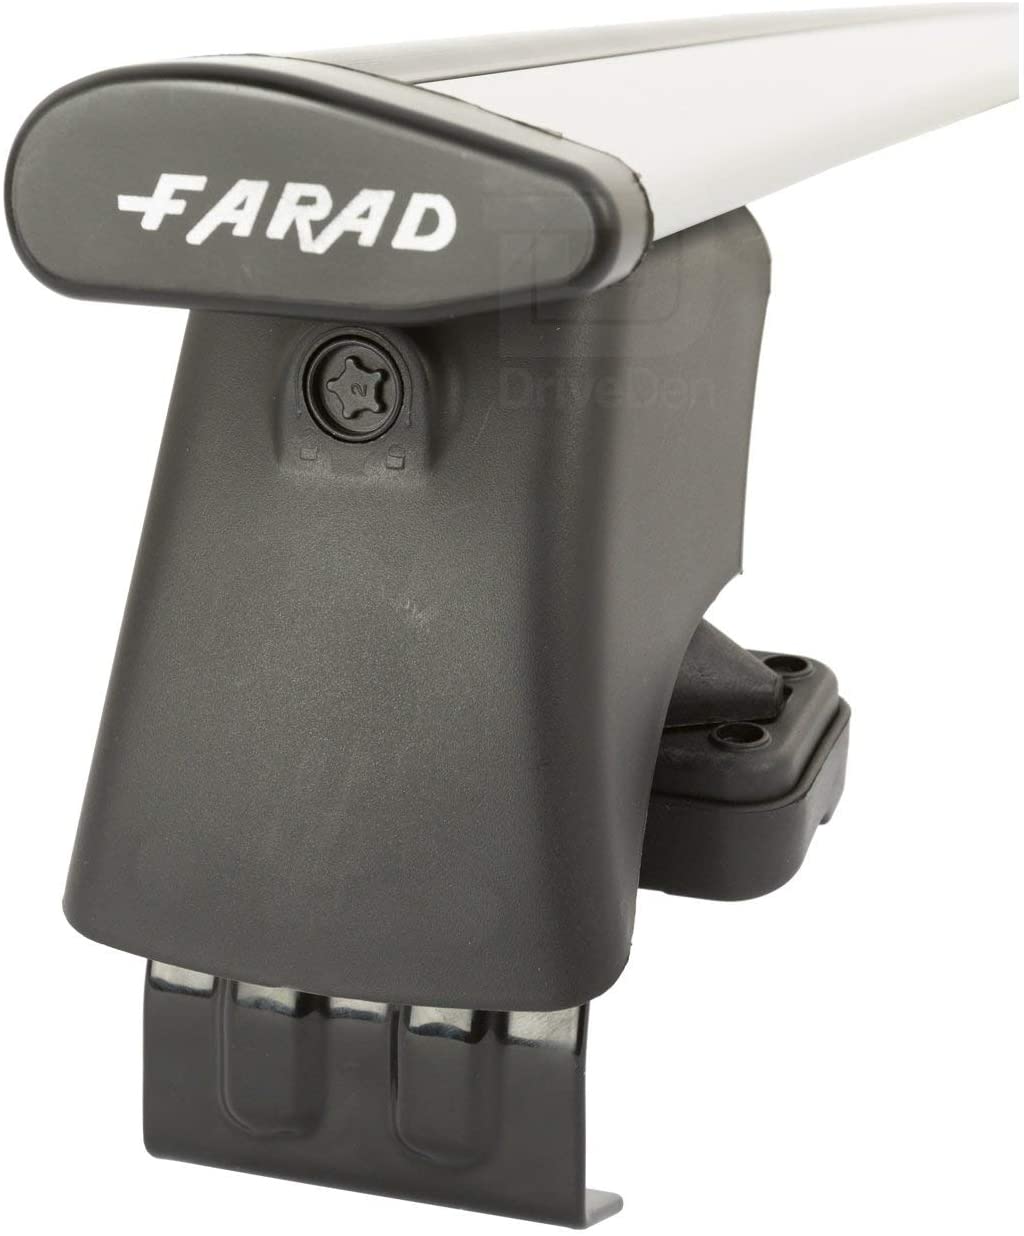 FARAD-Kit H2 per barre portatutto - Audi A3 2012-2020 (senza corrimano)